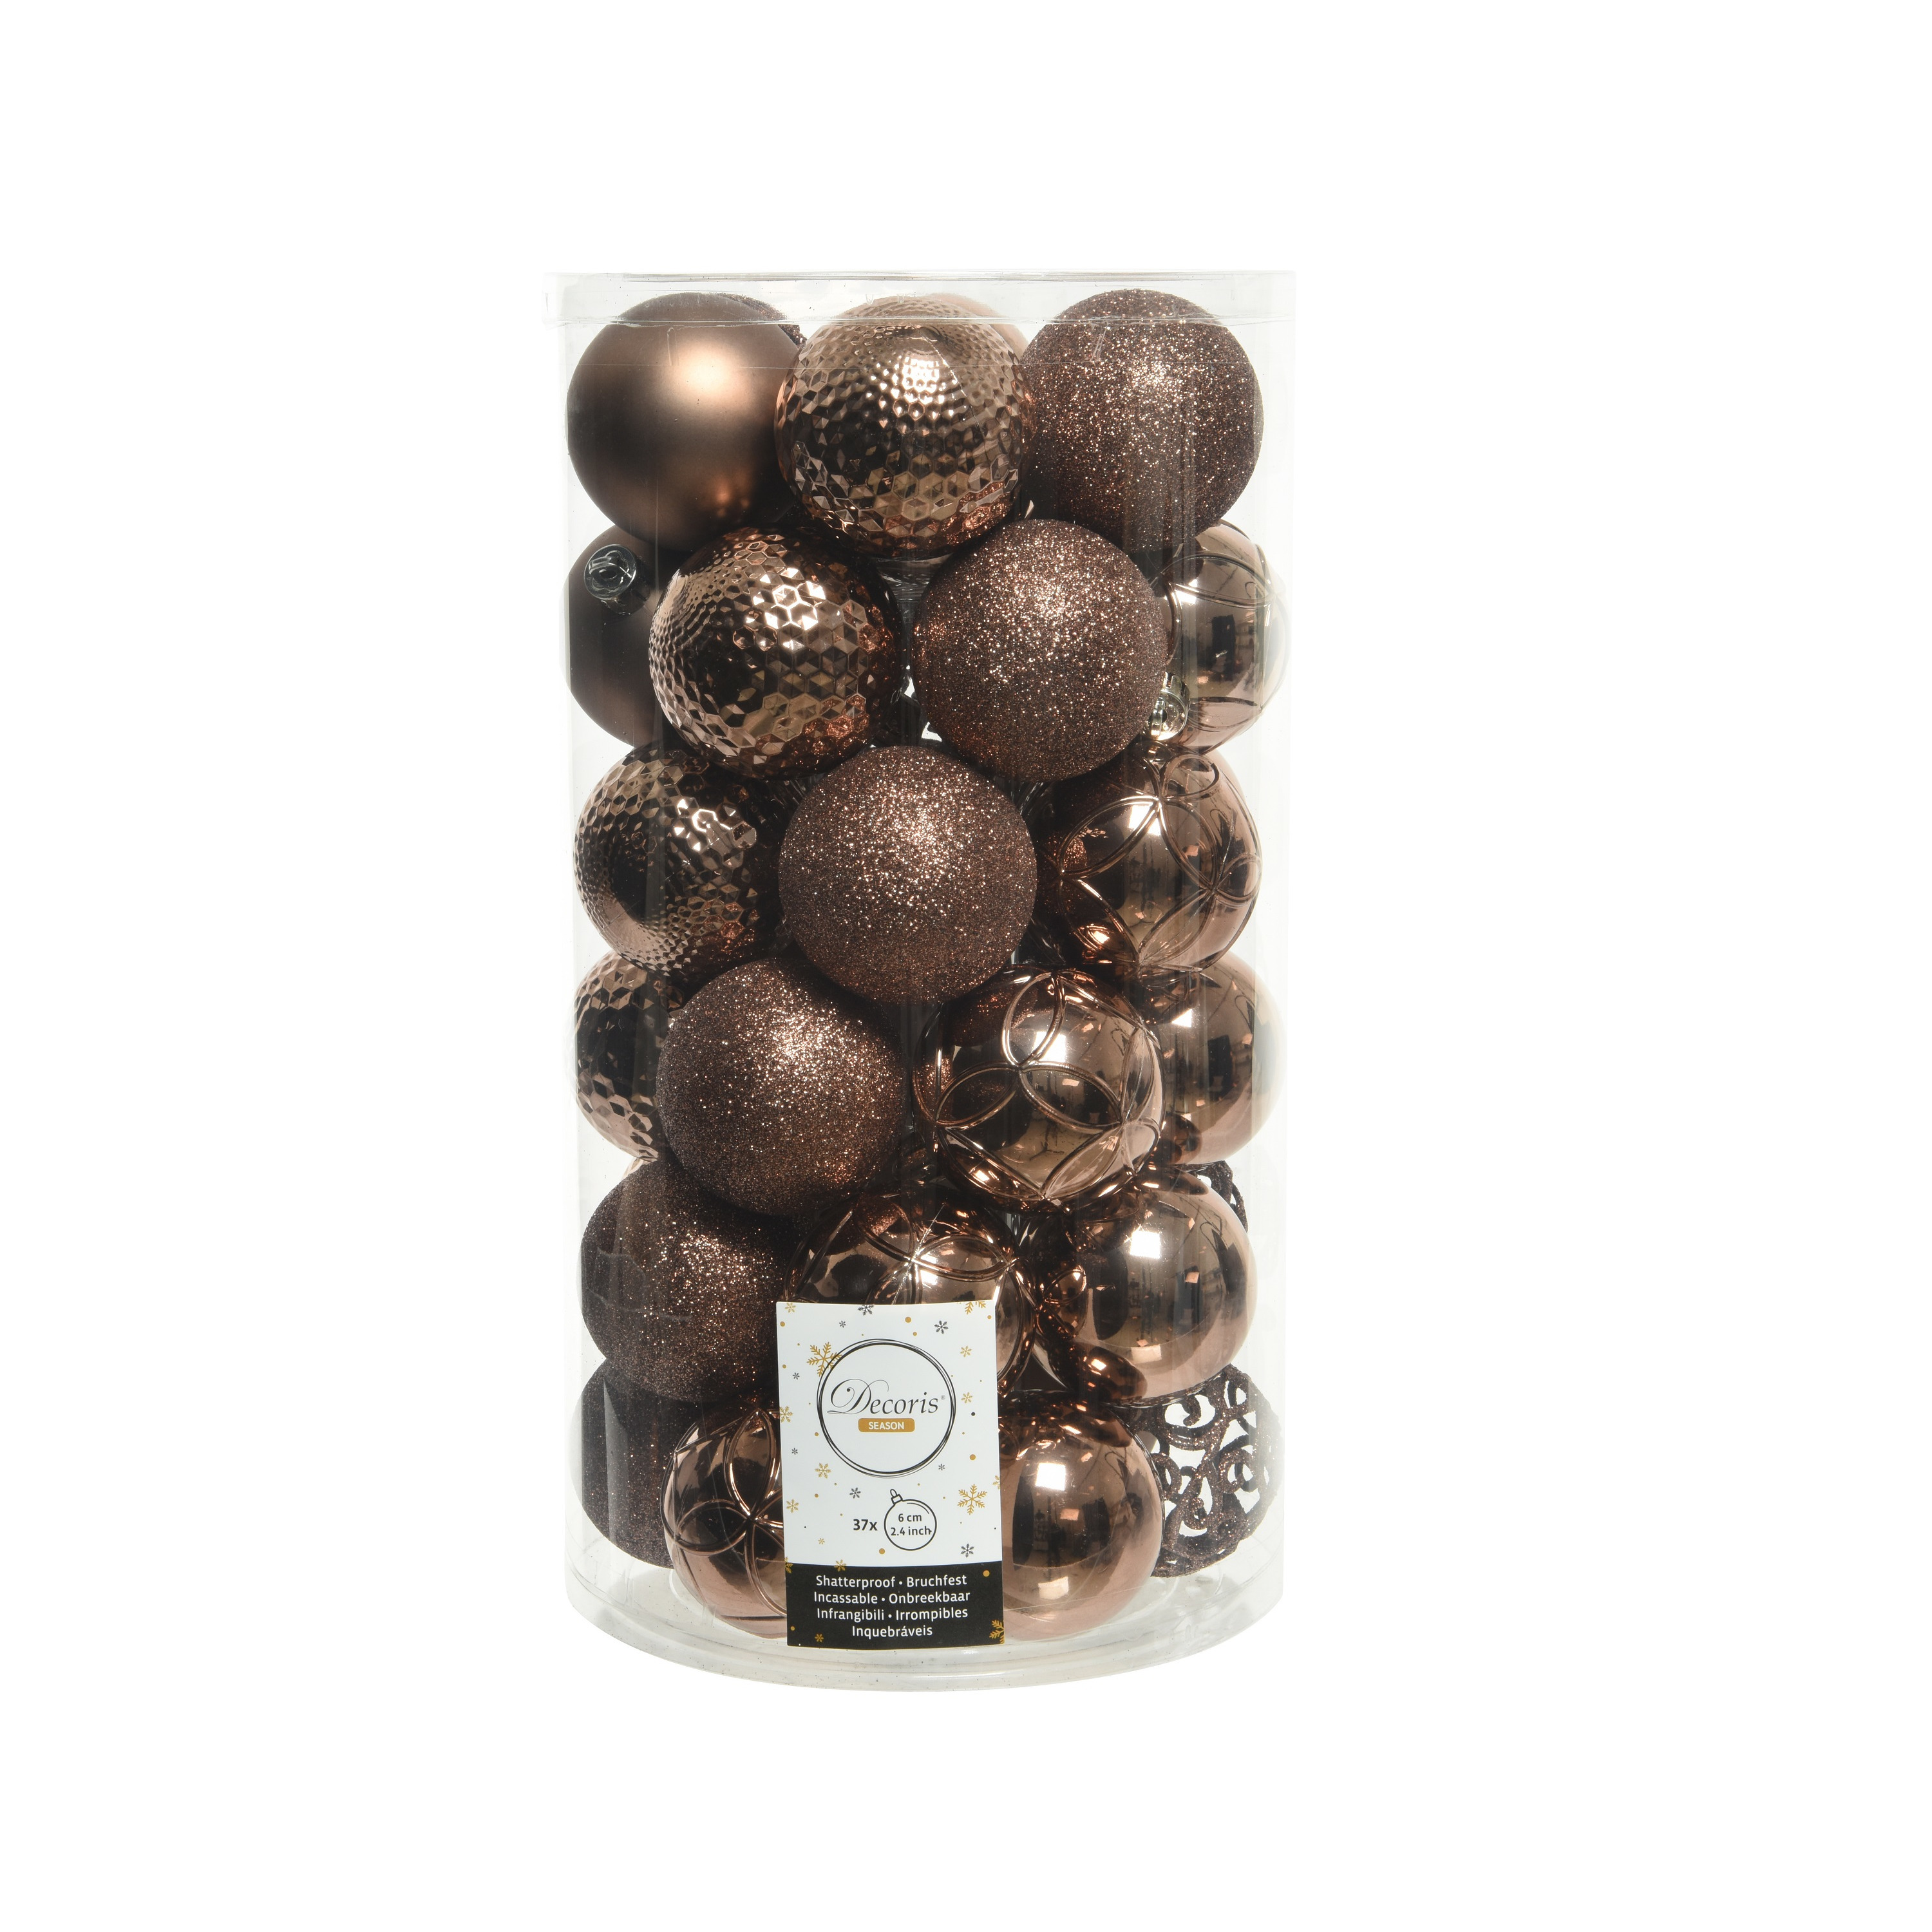 37x stuks kunststof kerstballen walnoot bruin 6 cm glans-mat-glitter mix